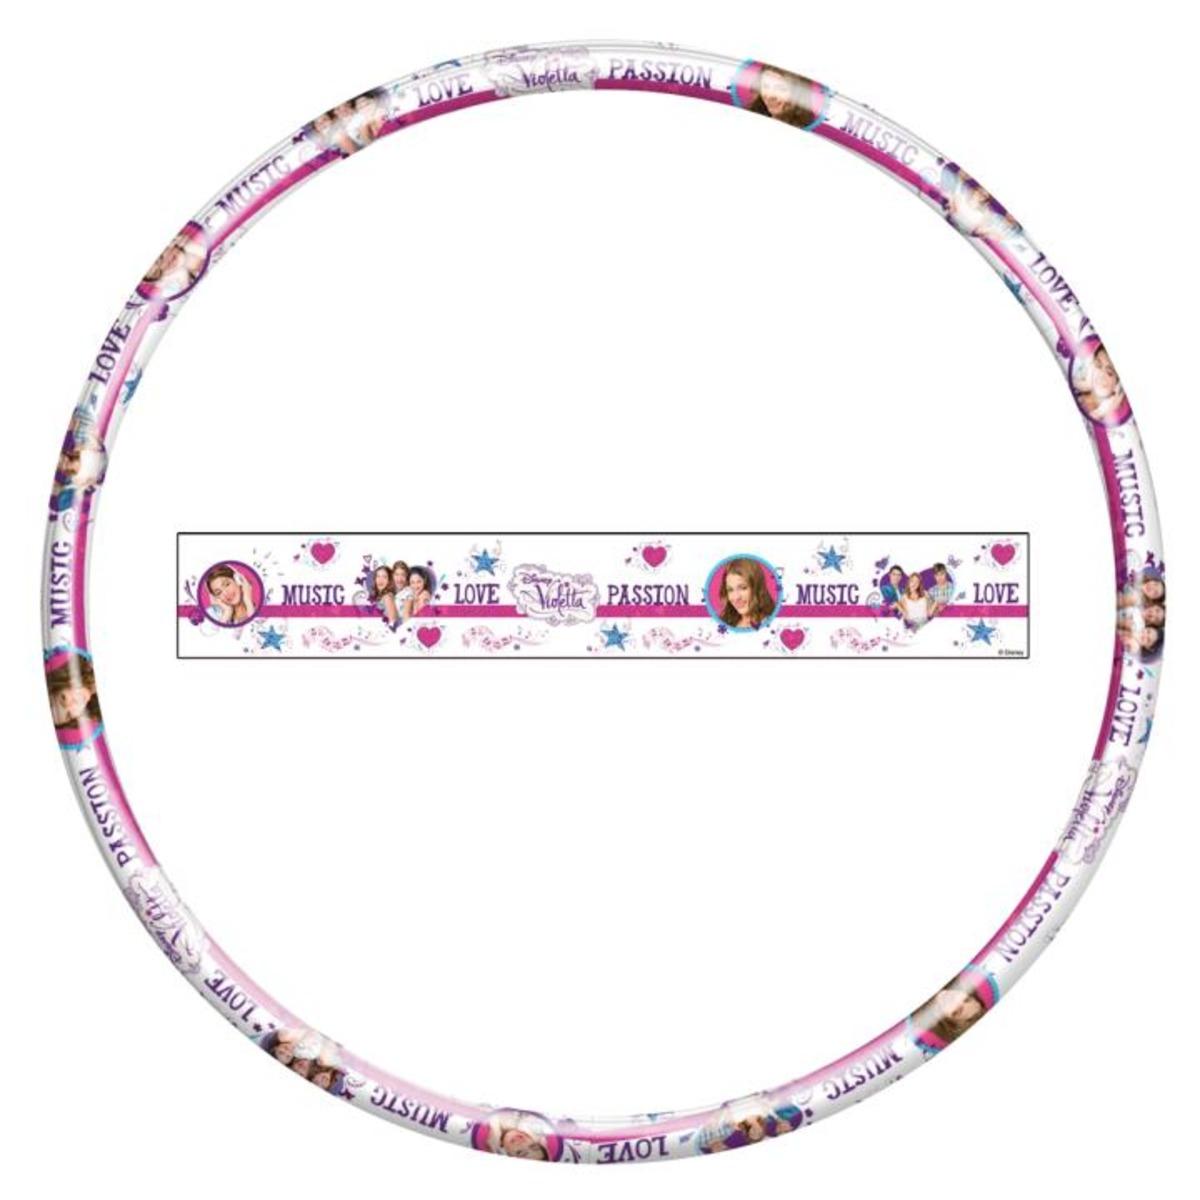 Cerceau Disney Violetta - Diamètre 80 cm - Multicolore